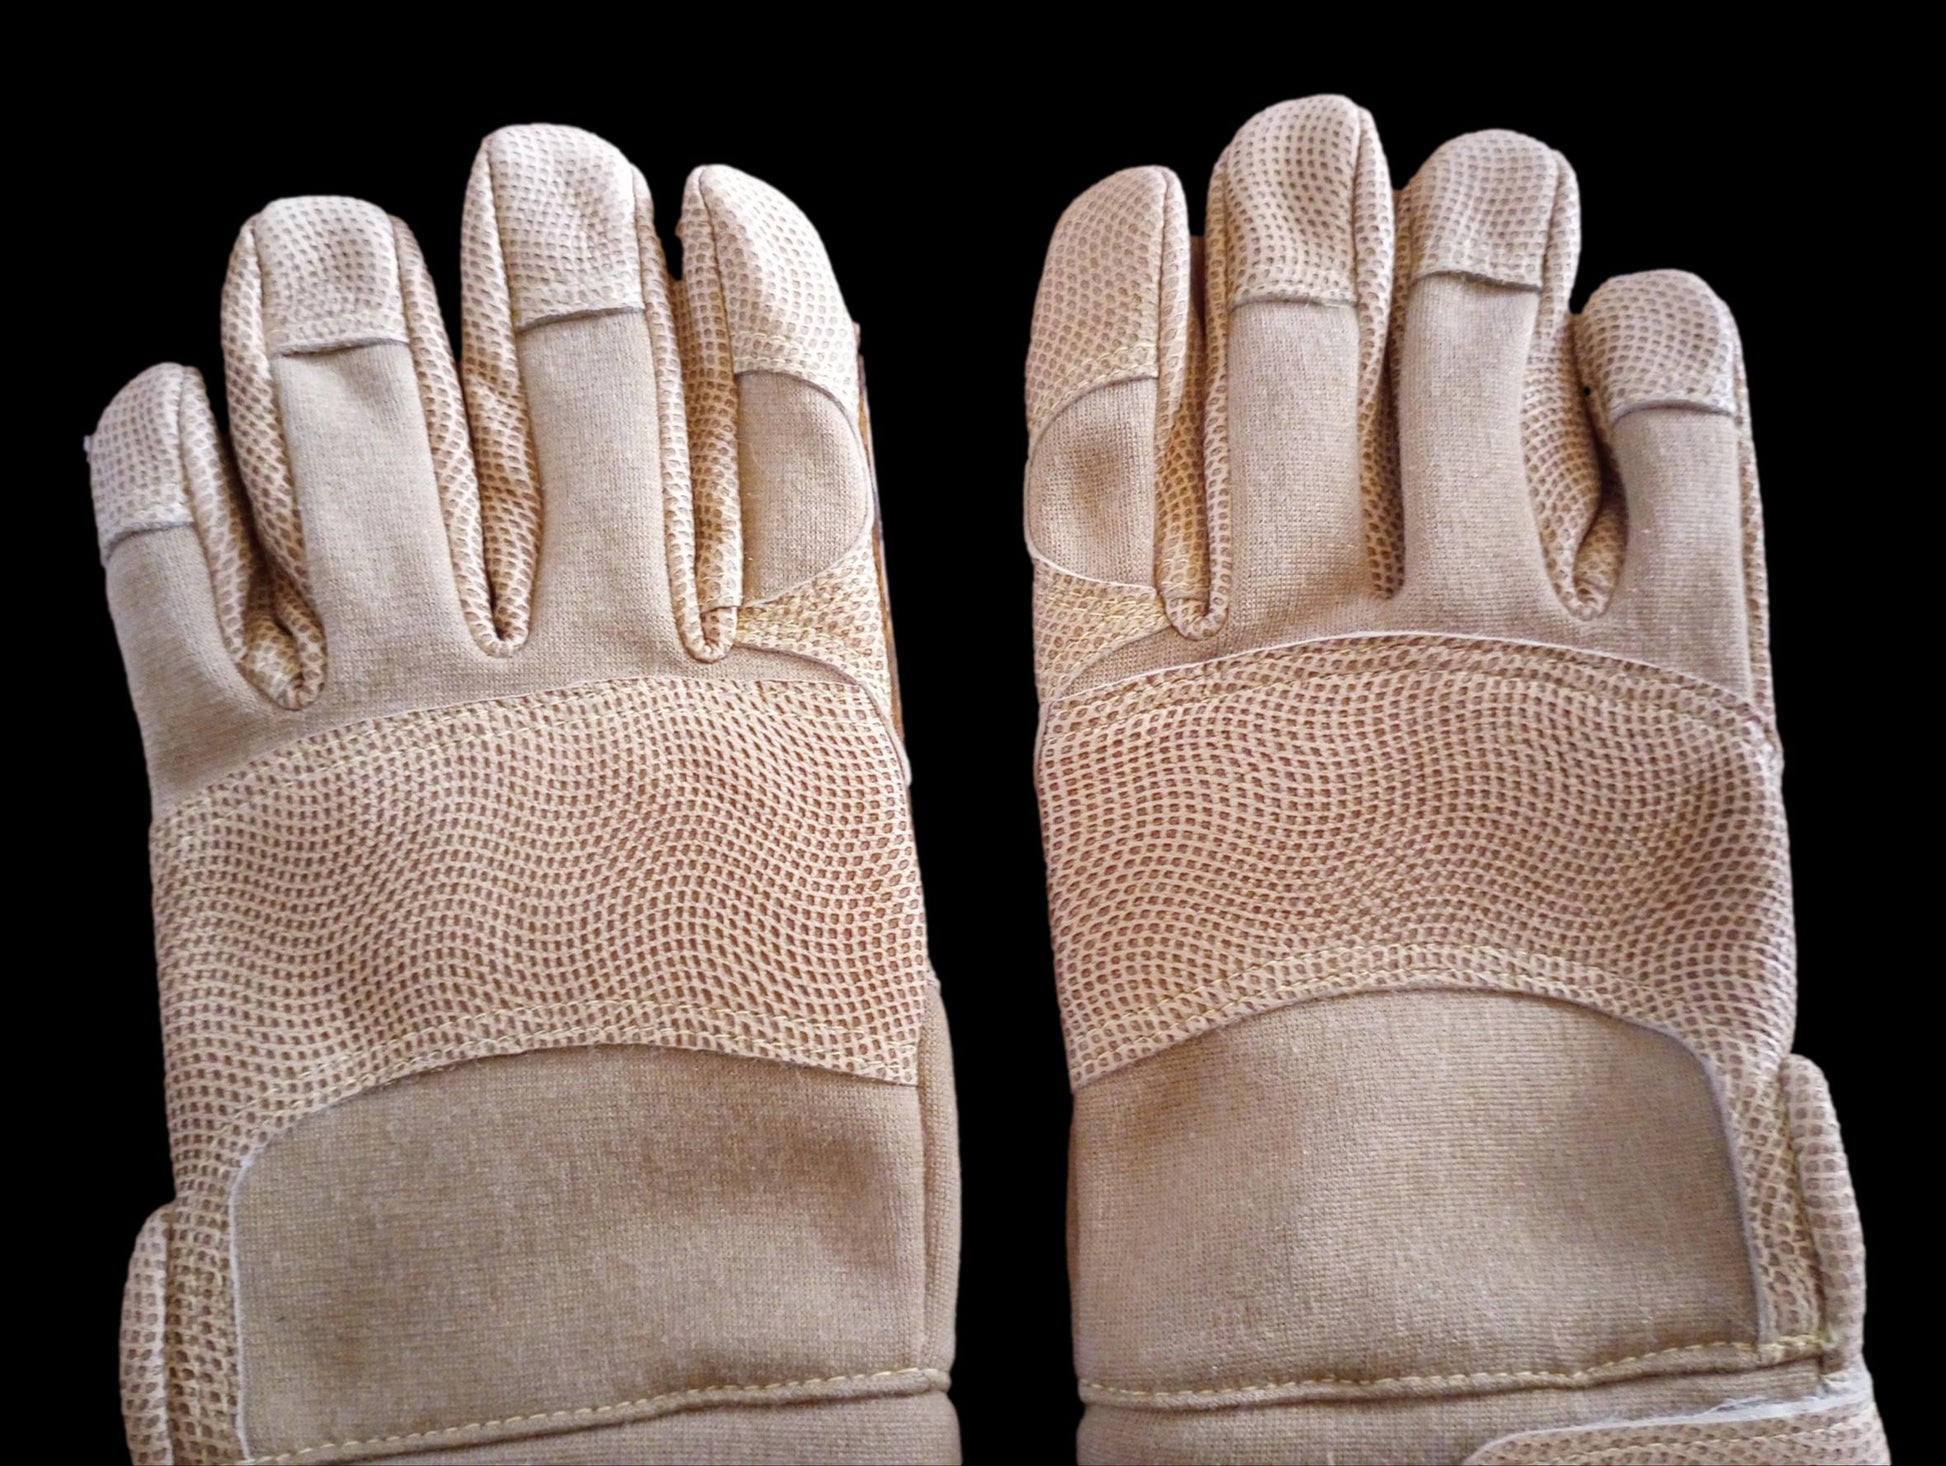 NEW Camelbak Max Grip Gloves - SW Motorsports Desert-Tan M